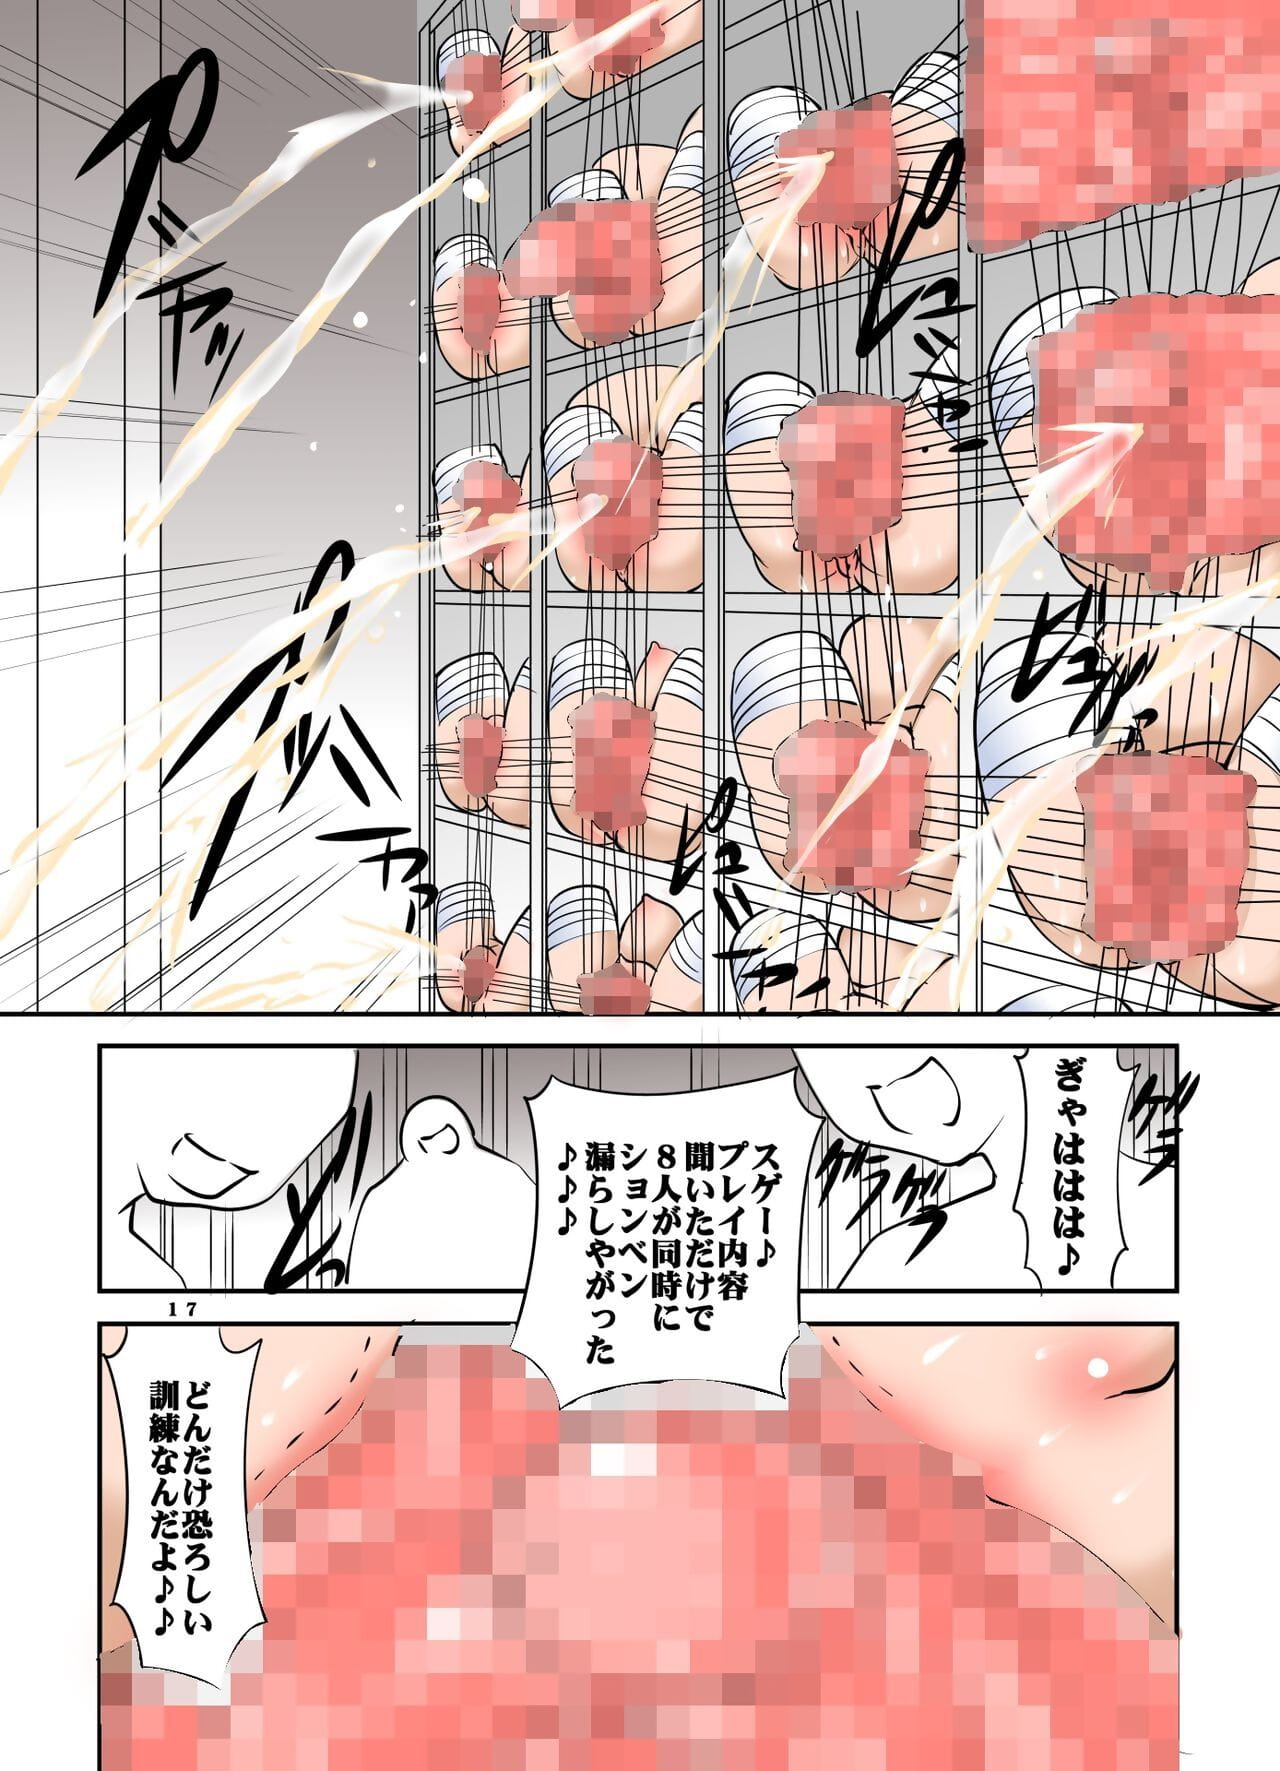 shishi setsudan shoujo goumon Gyakutai kan keine Maid san vol 3 page 1